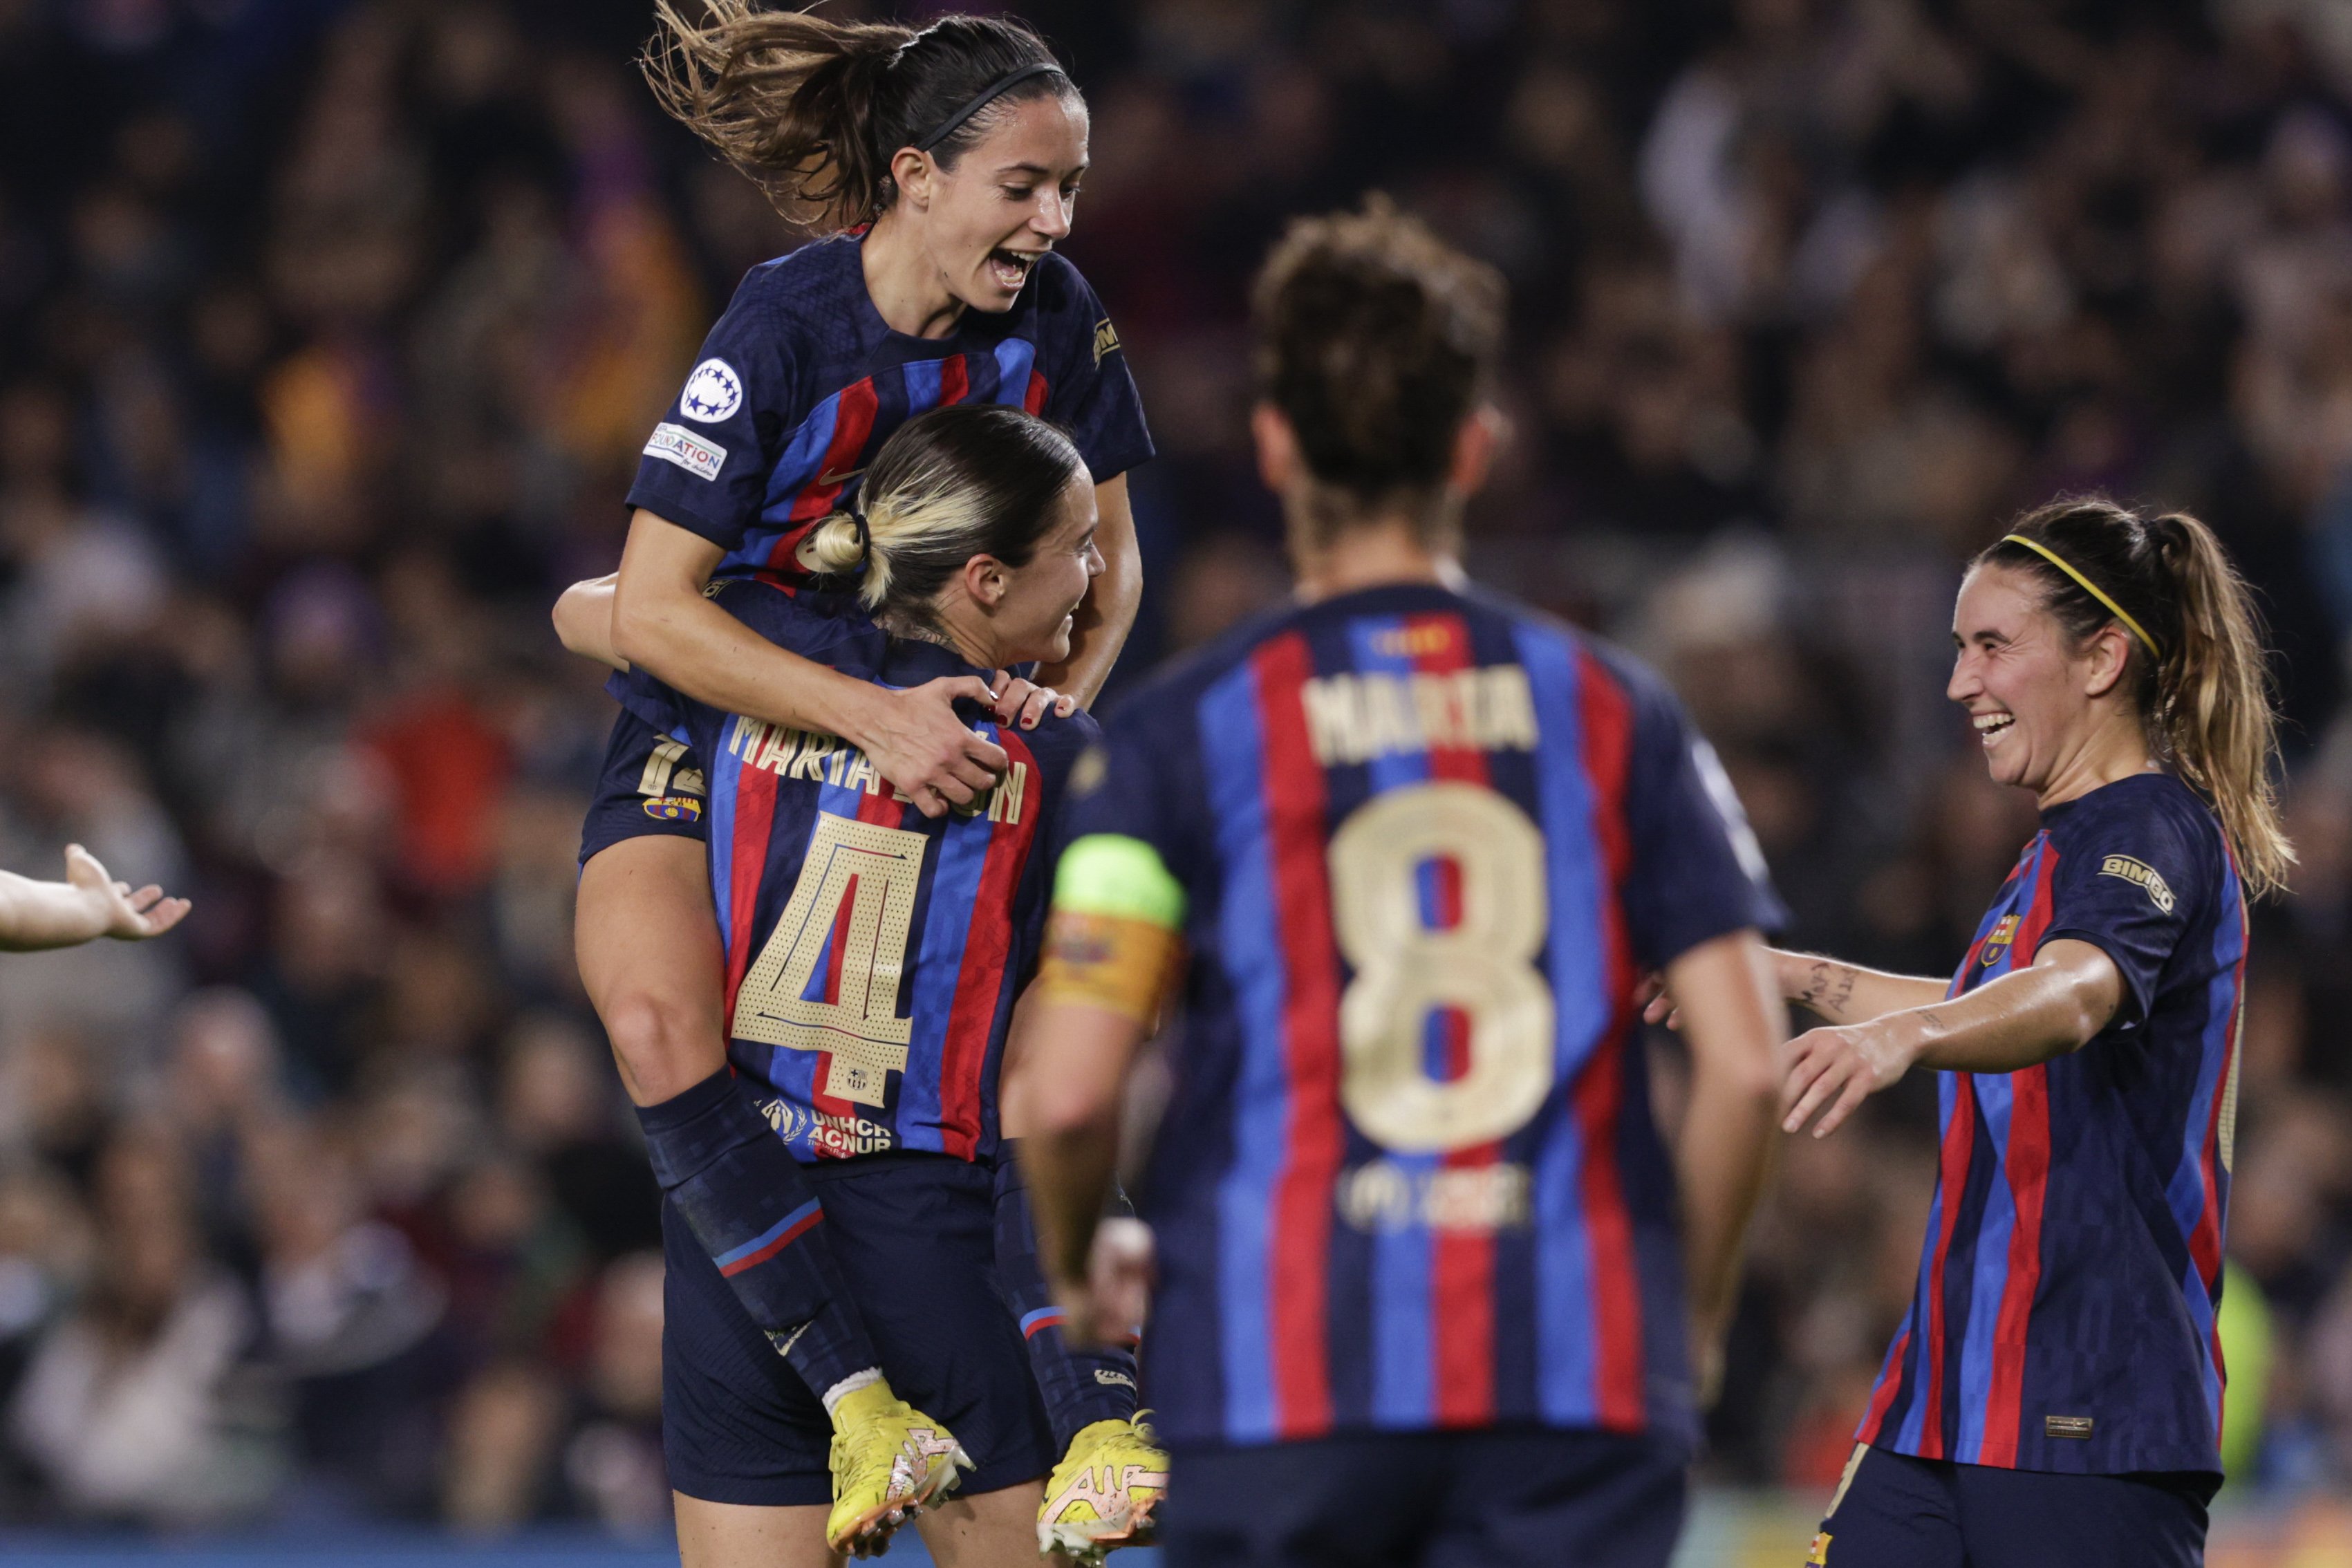 El Barça s'enfrontarà a la Roma als quarts de final de la Champions femenina